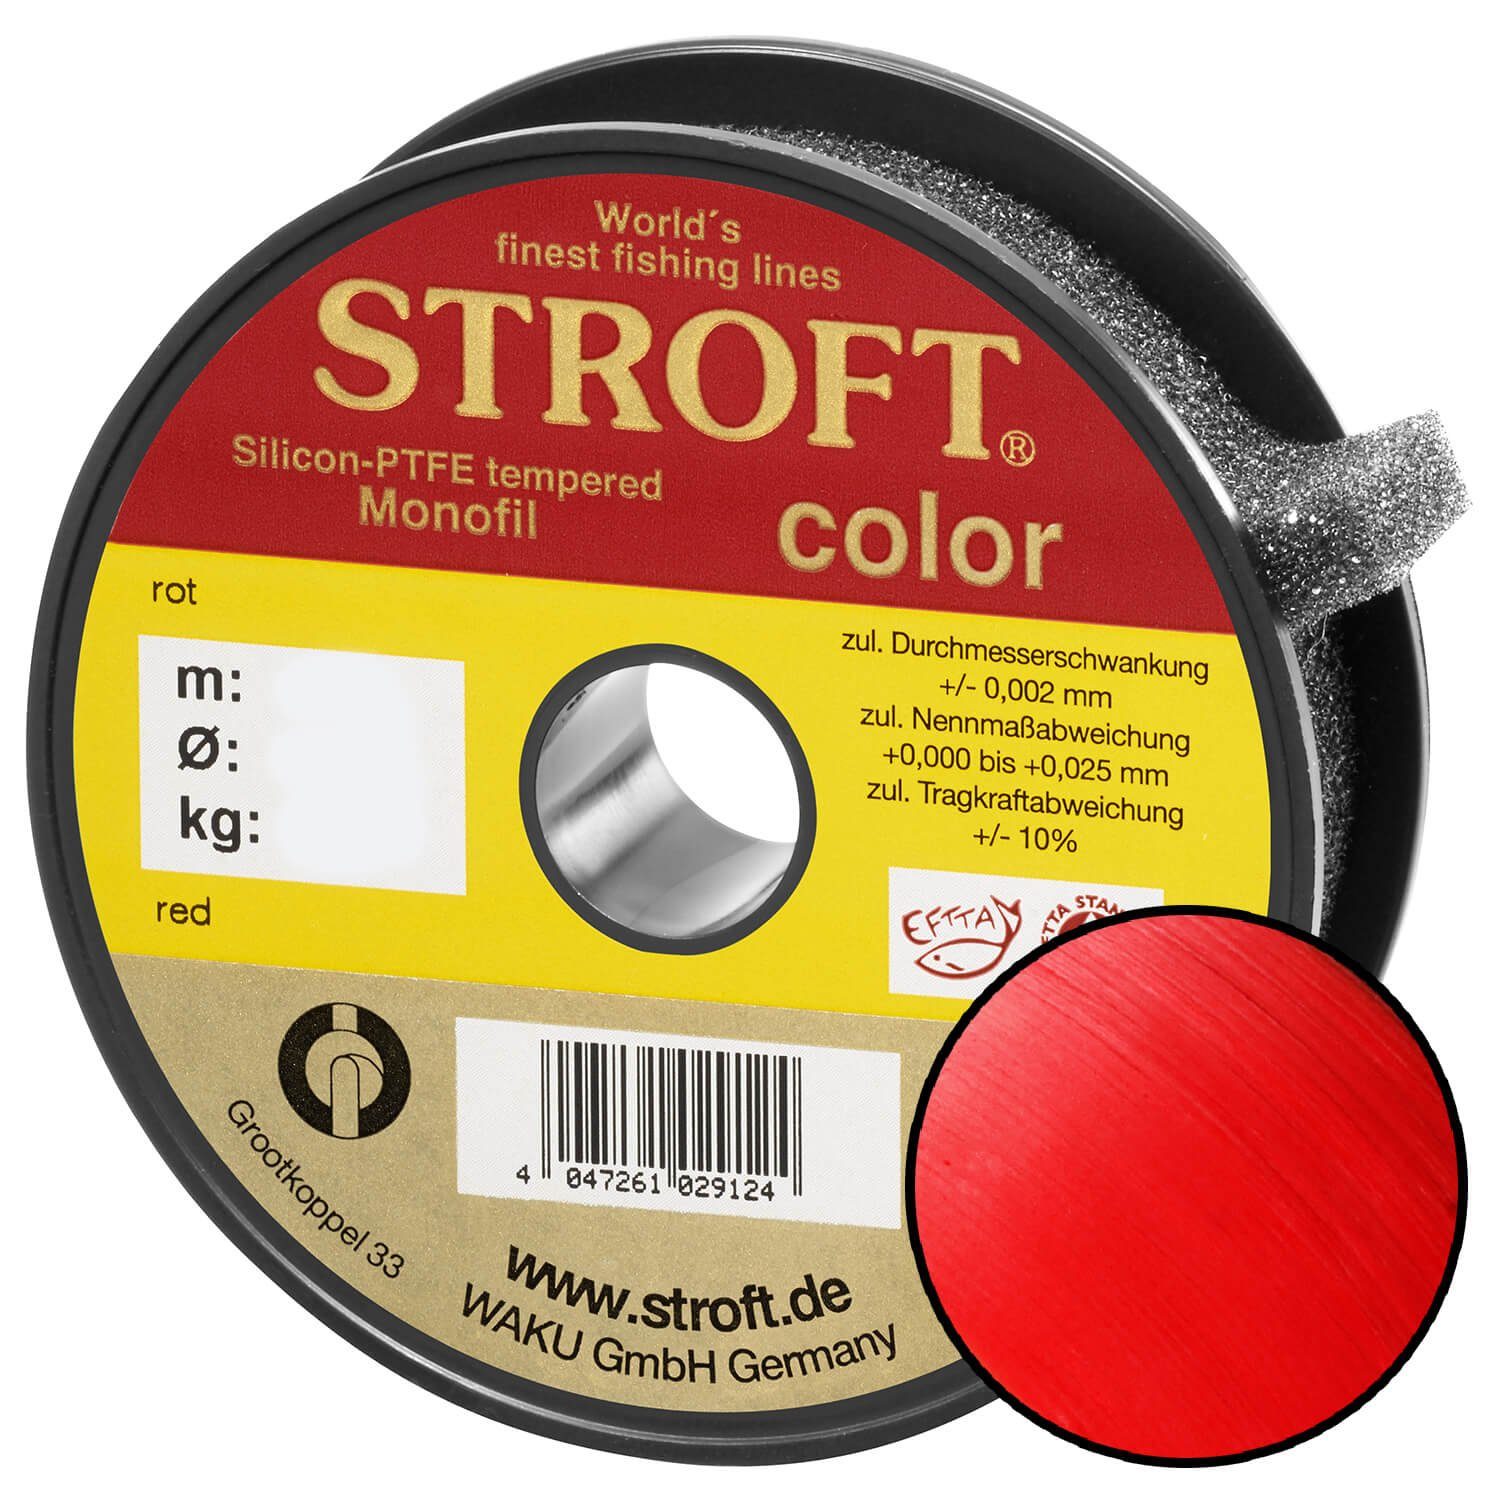 Stroft Angelschnur STROFT Rot, Monofile 25 Länge, Color m Angelschnur (1-St)